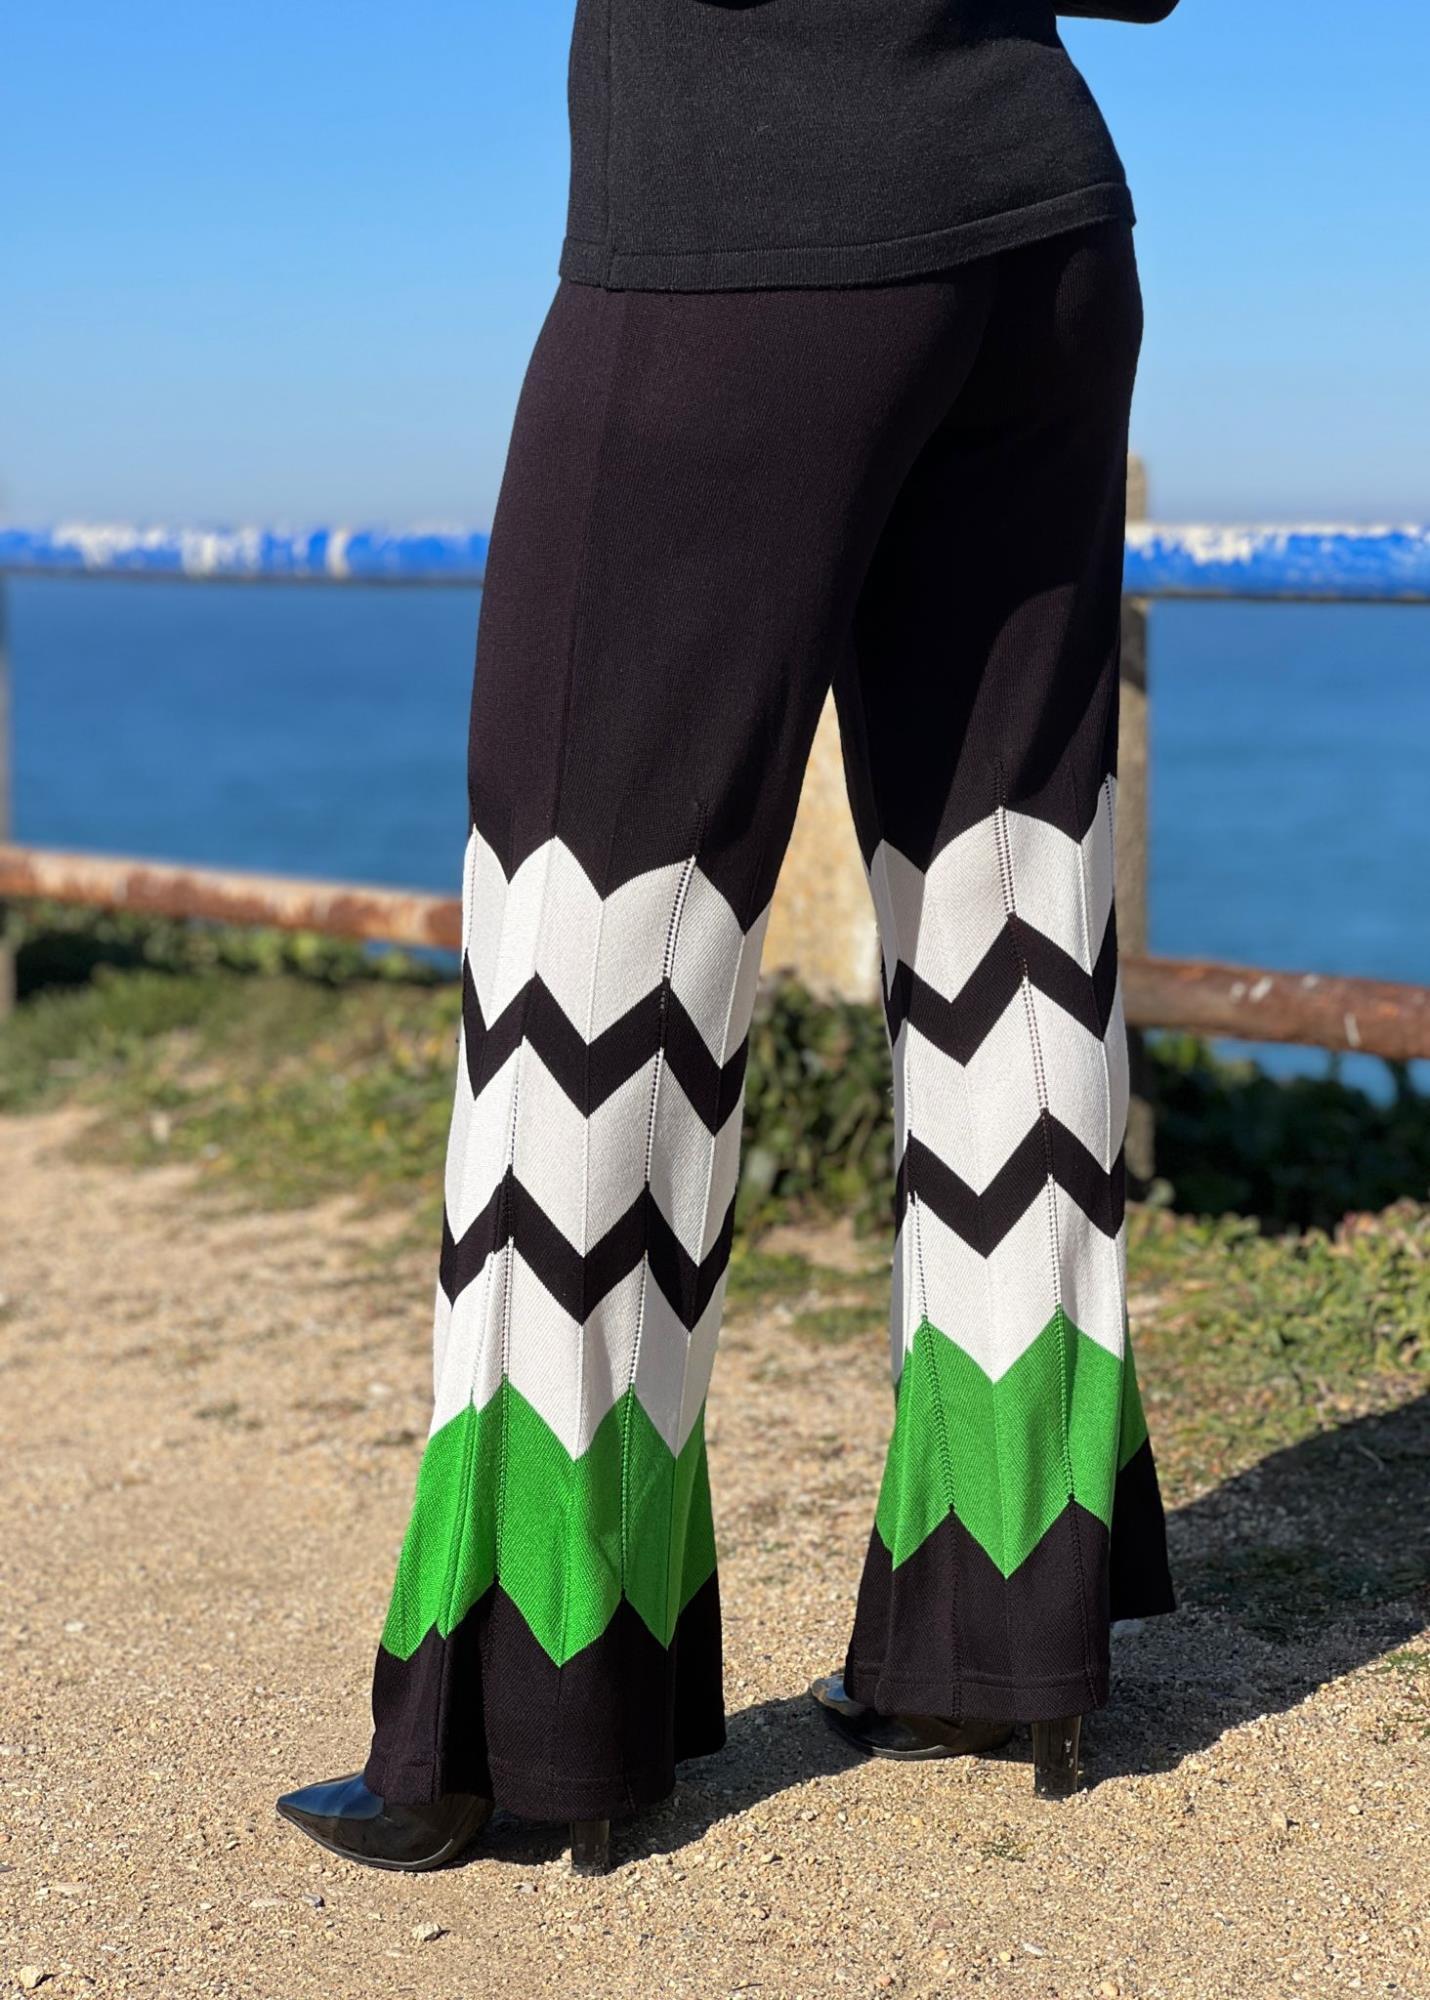 Pantalona padrão zigzag